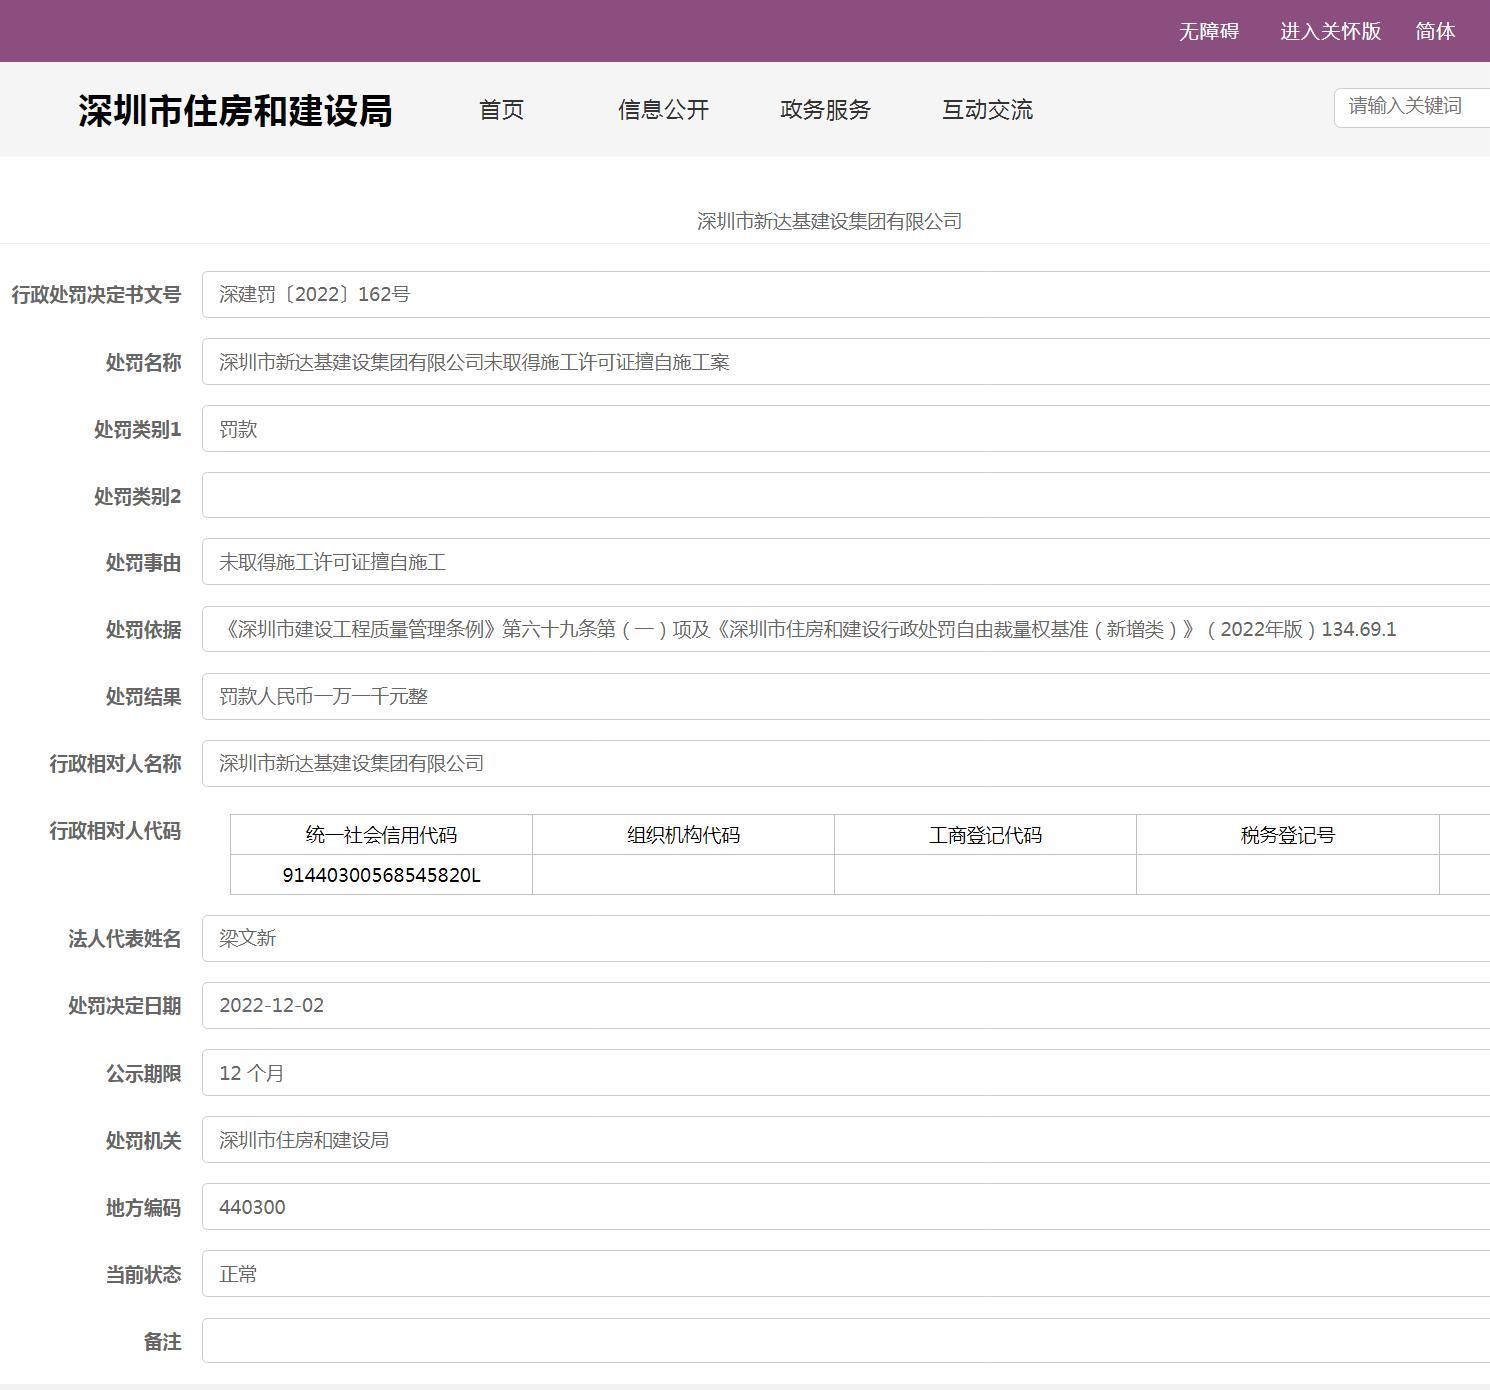 未取得施工许可证擅自施工 深圳市新达基建设集团有限公司被罚1.1万元